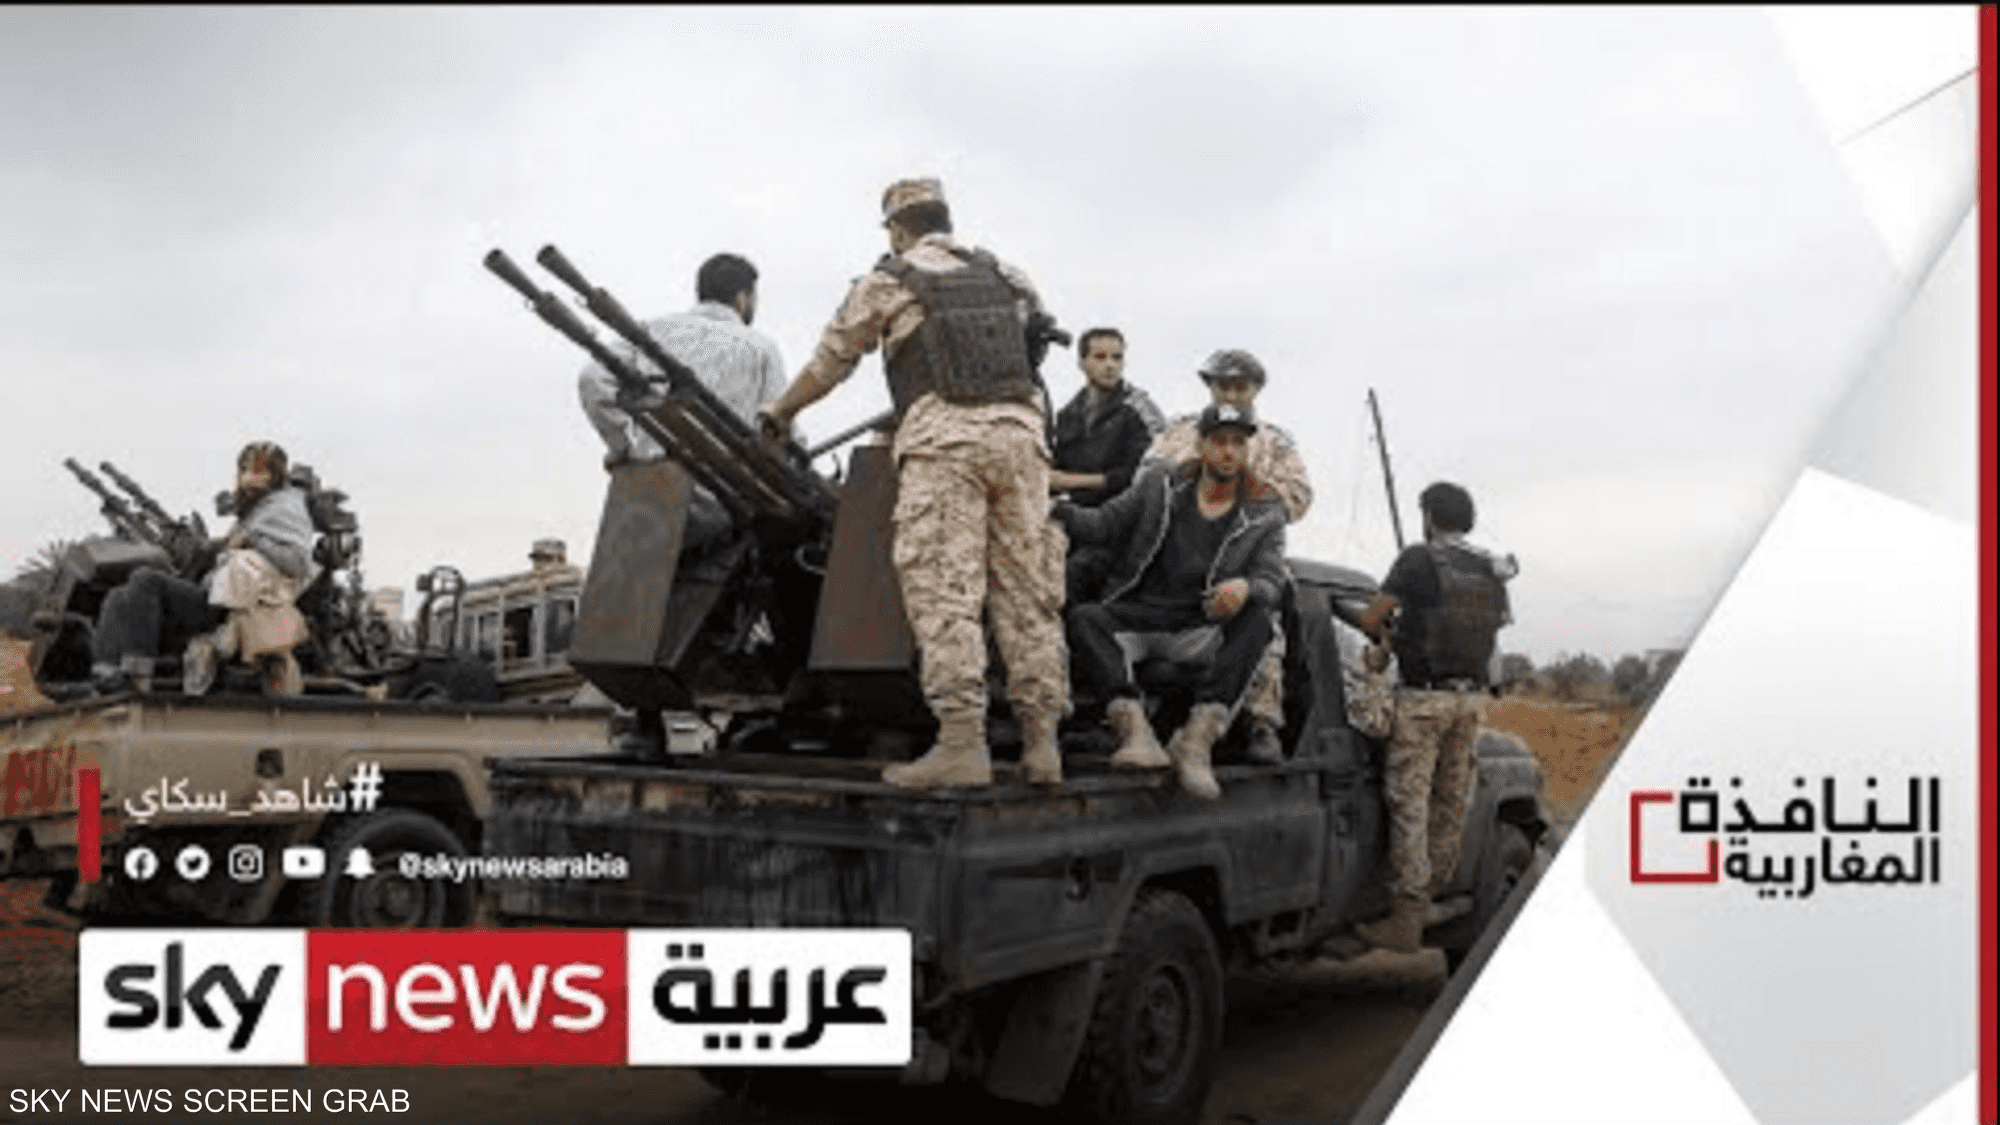 تنظيم الإخوان يحتكر رئاسة مجلس الدولة الليبي